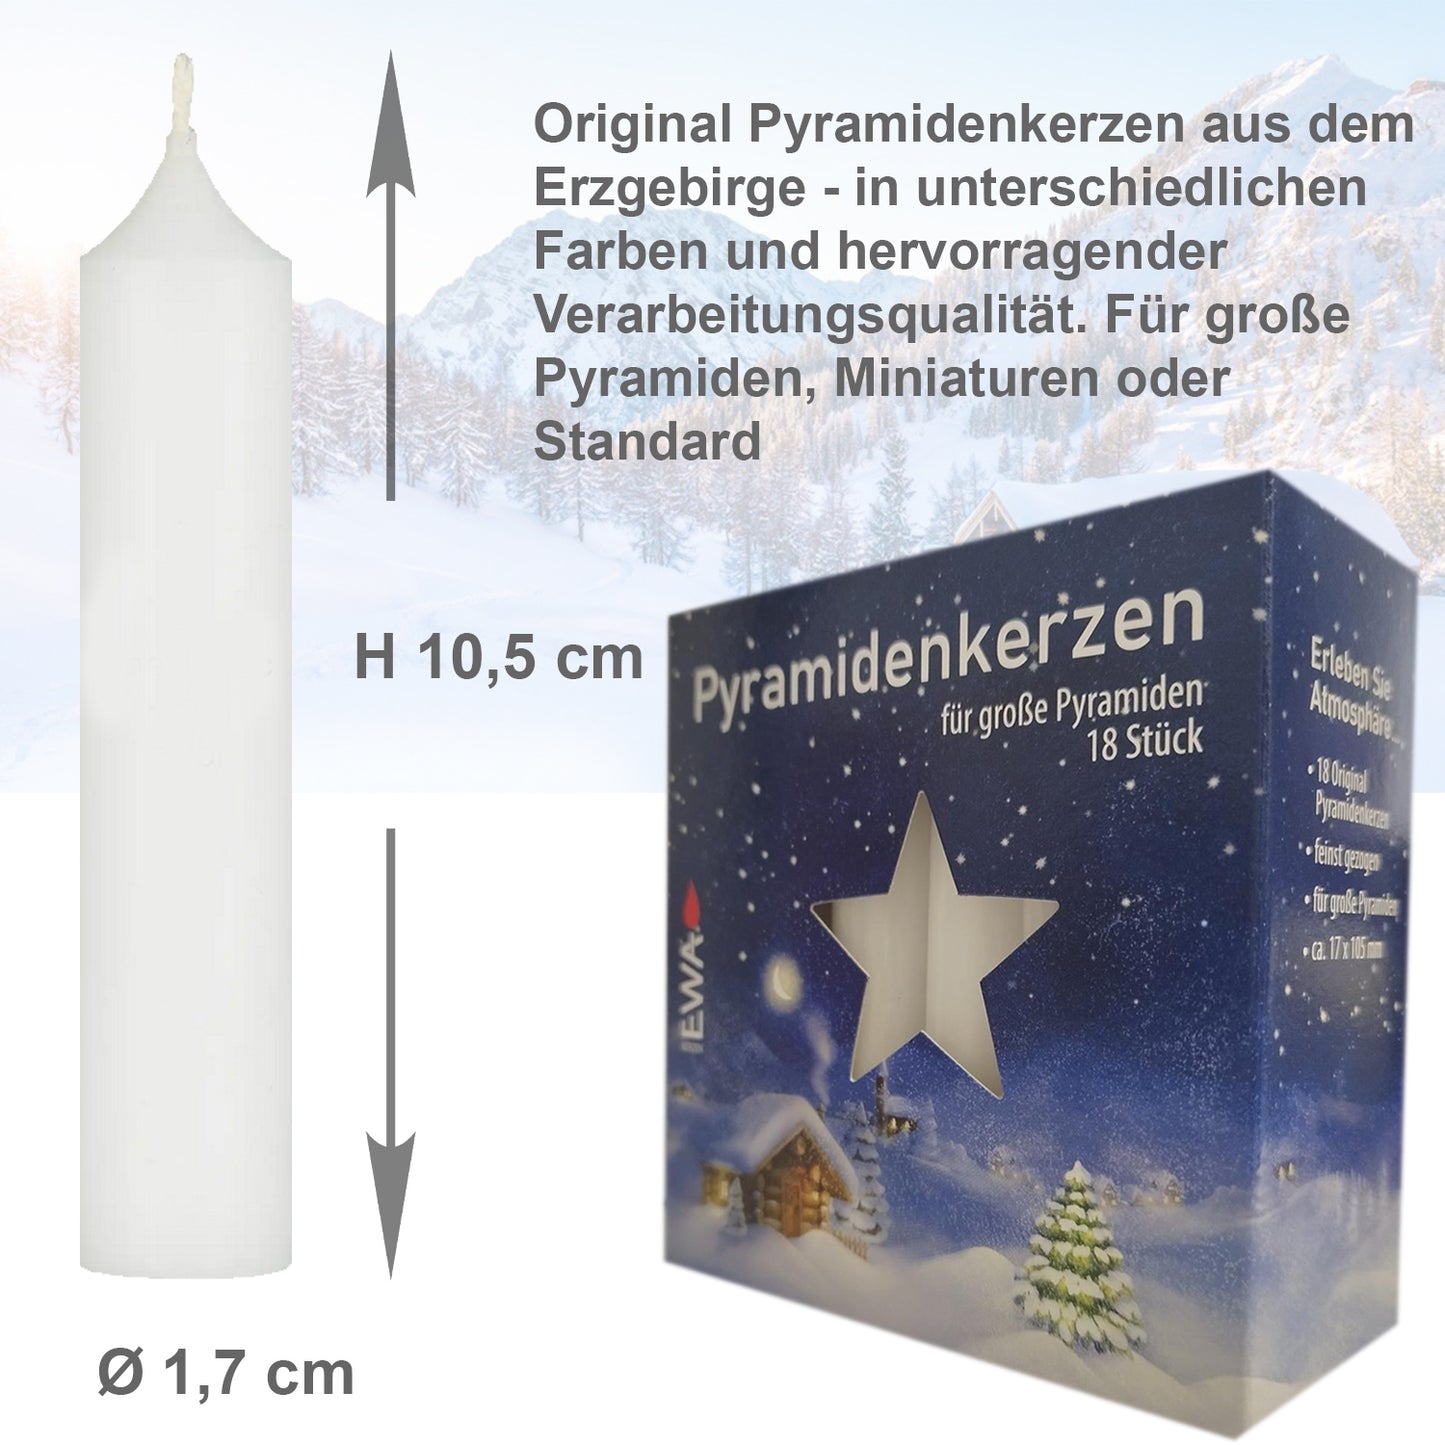 288er Set Erzgebirge (16x18 Stk) Pyramidenkerzen, Ø 1,72 x H 10,5 cm, weiß